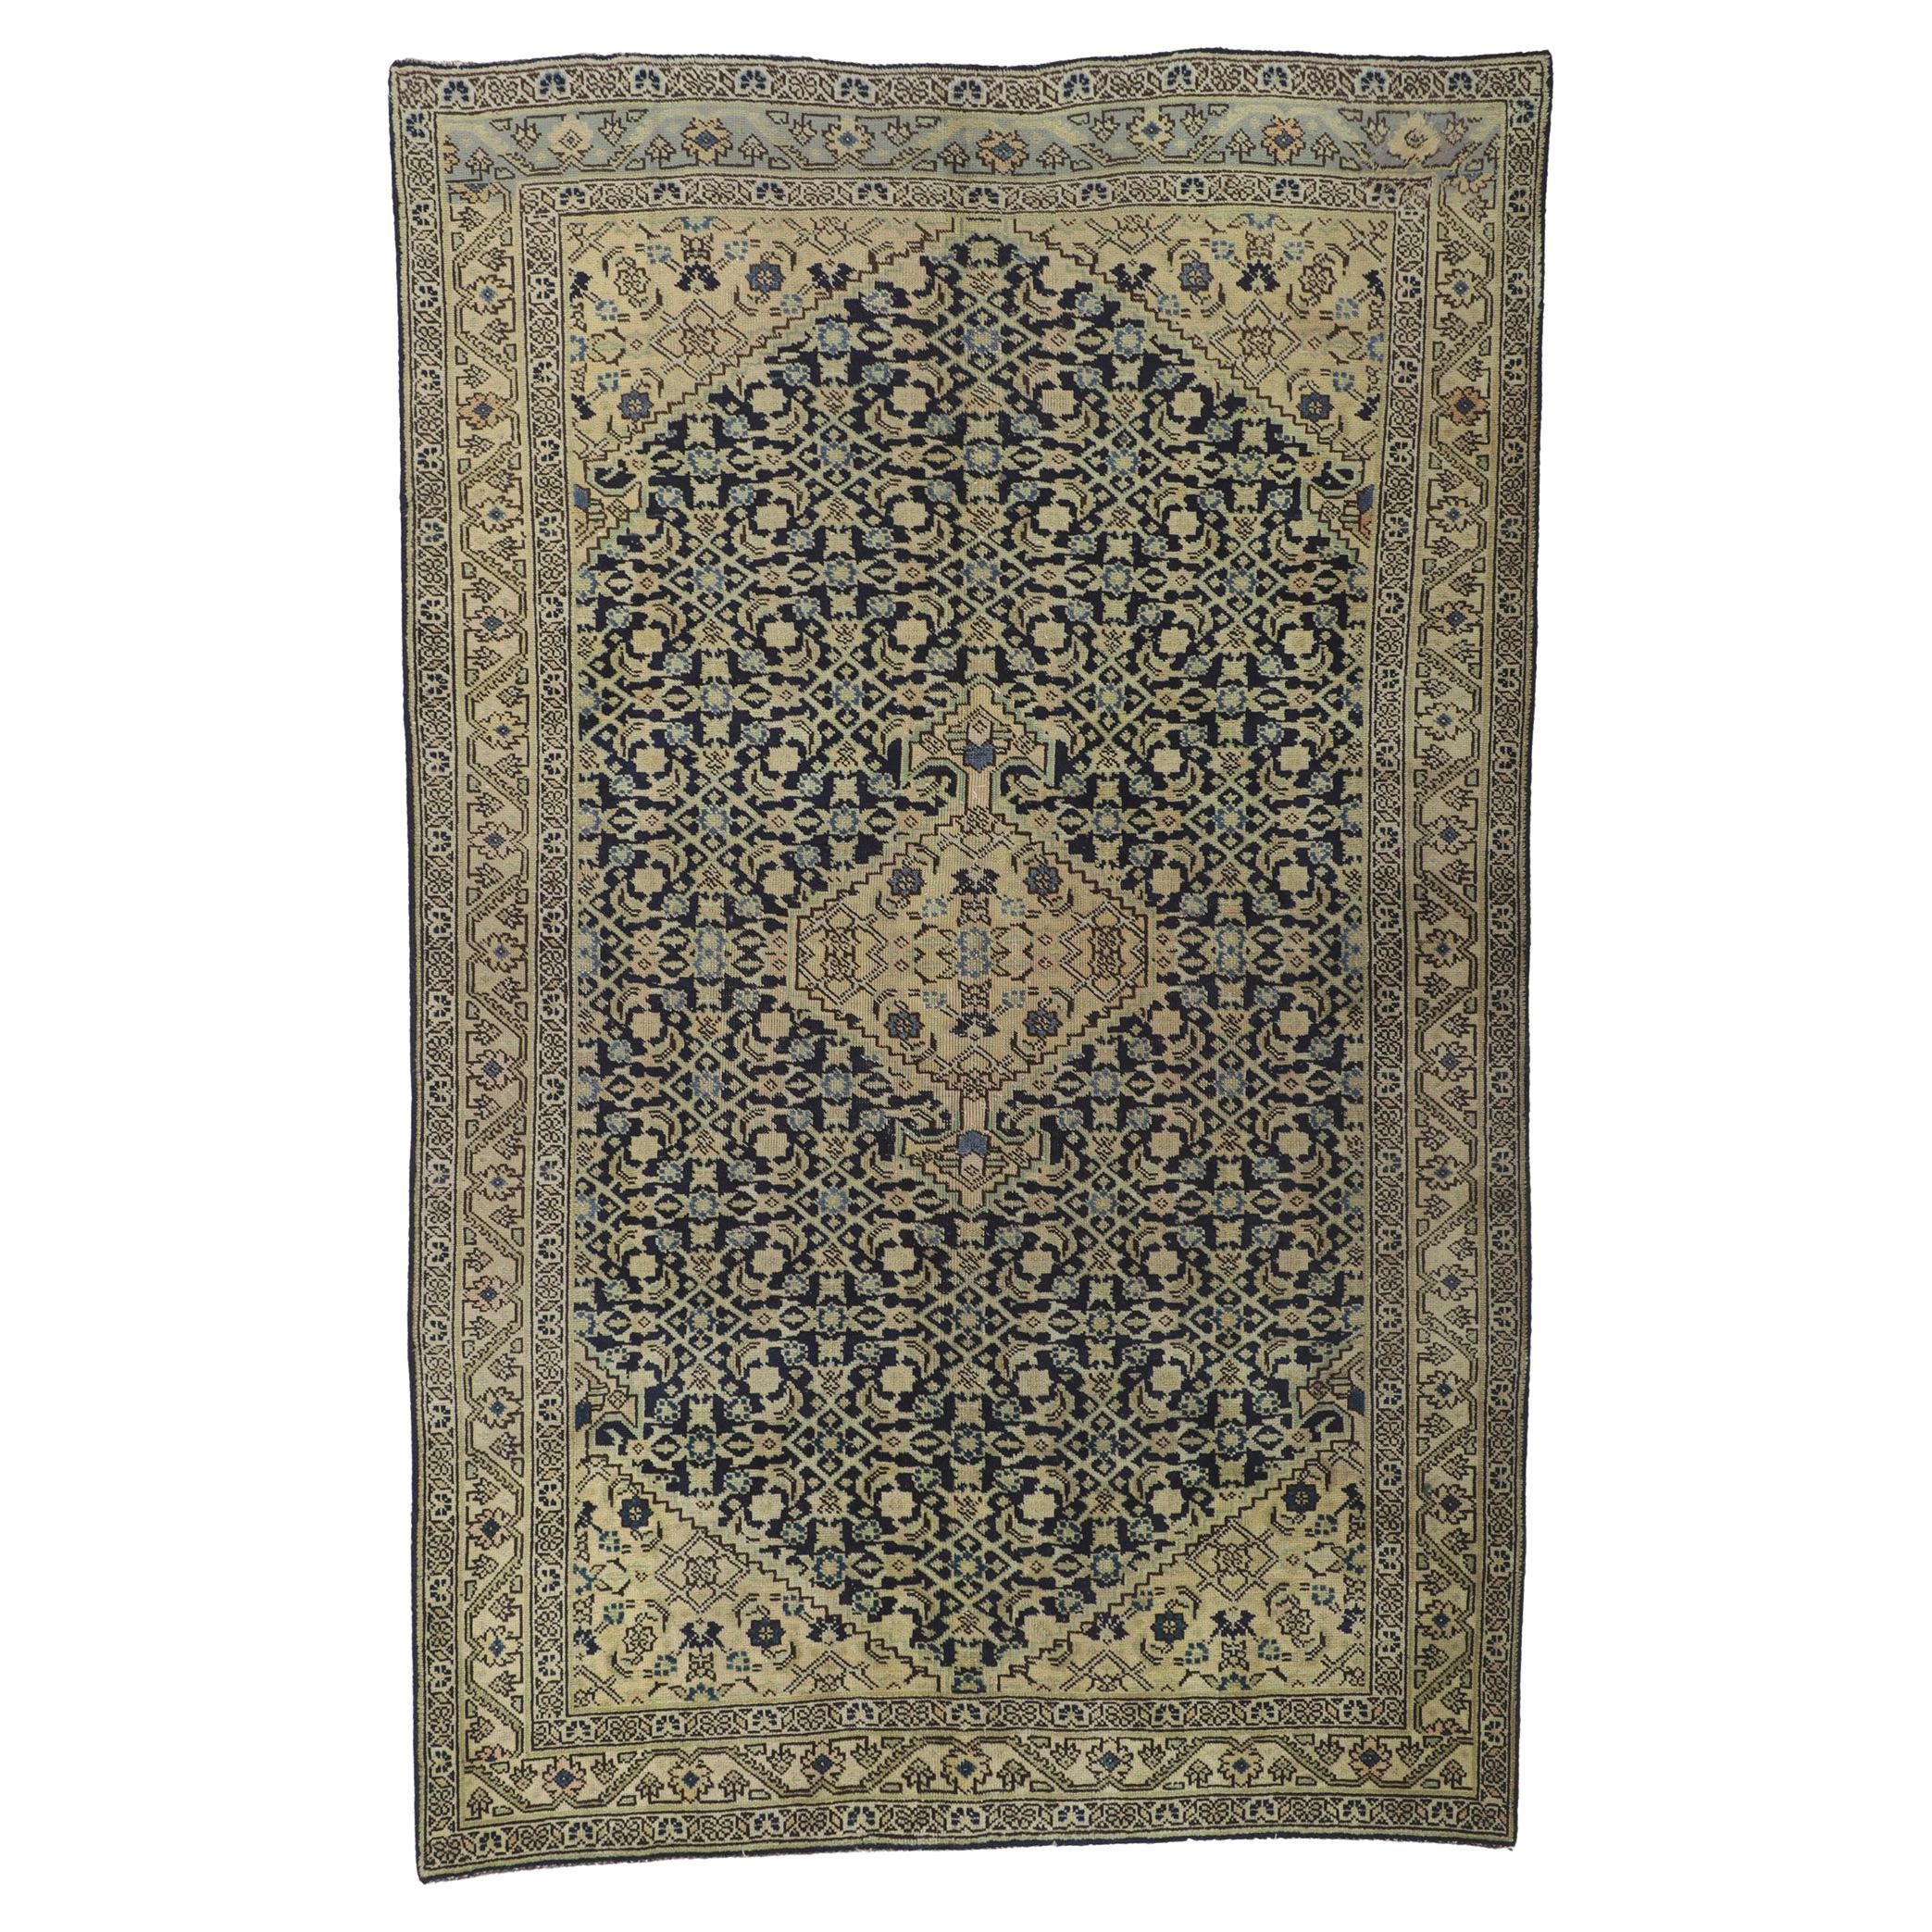 Antique Persian Tabriz Rug with Herati Design